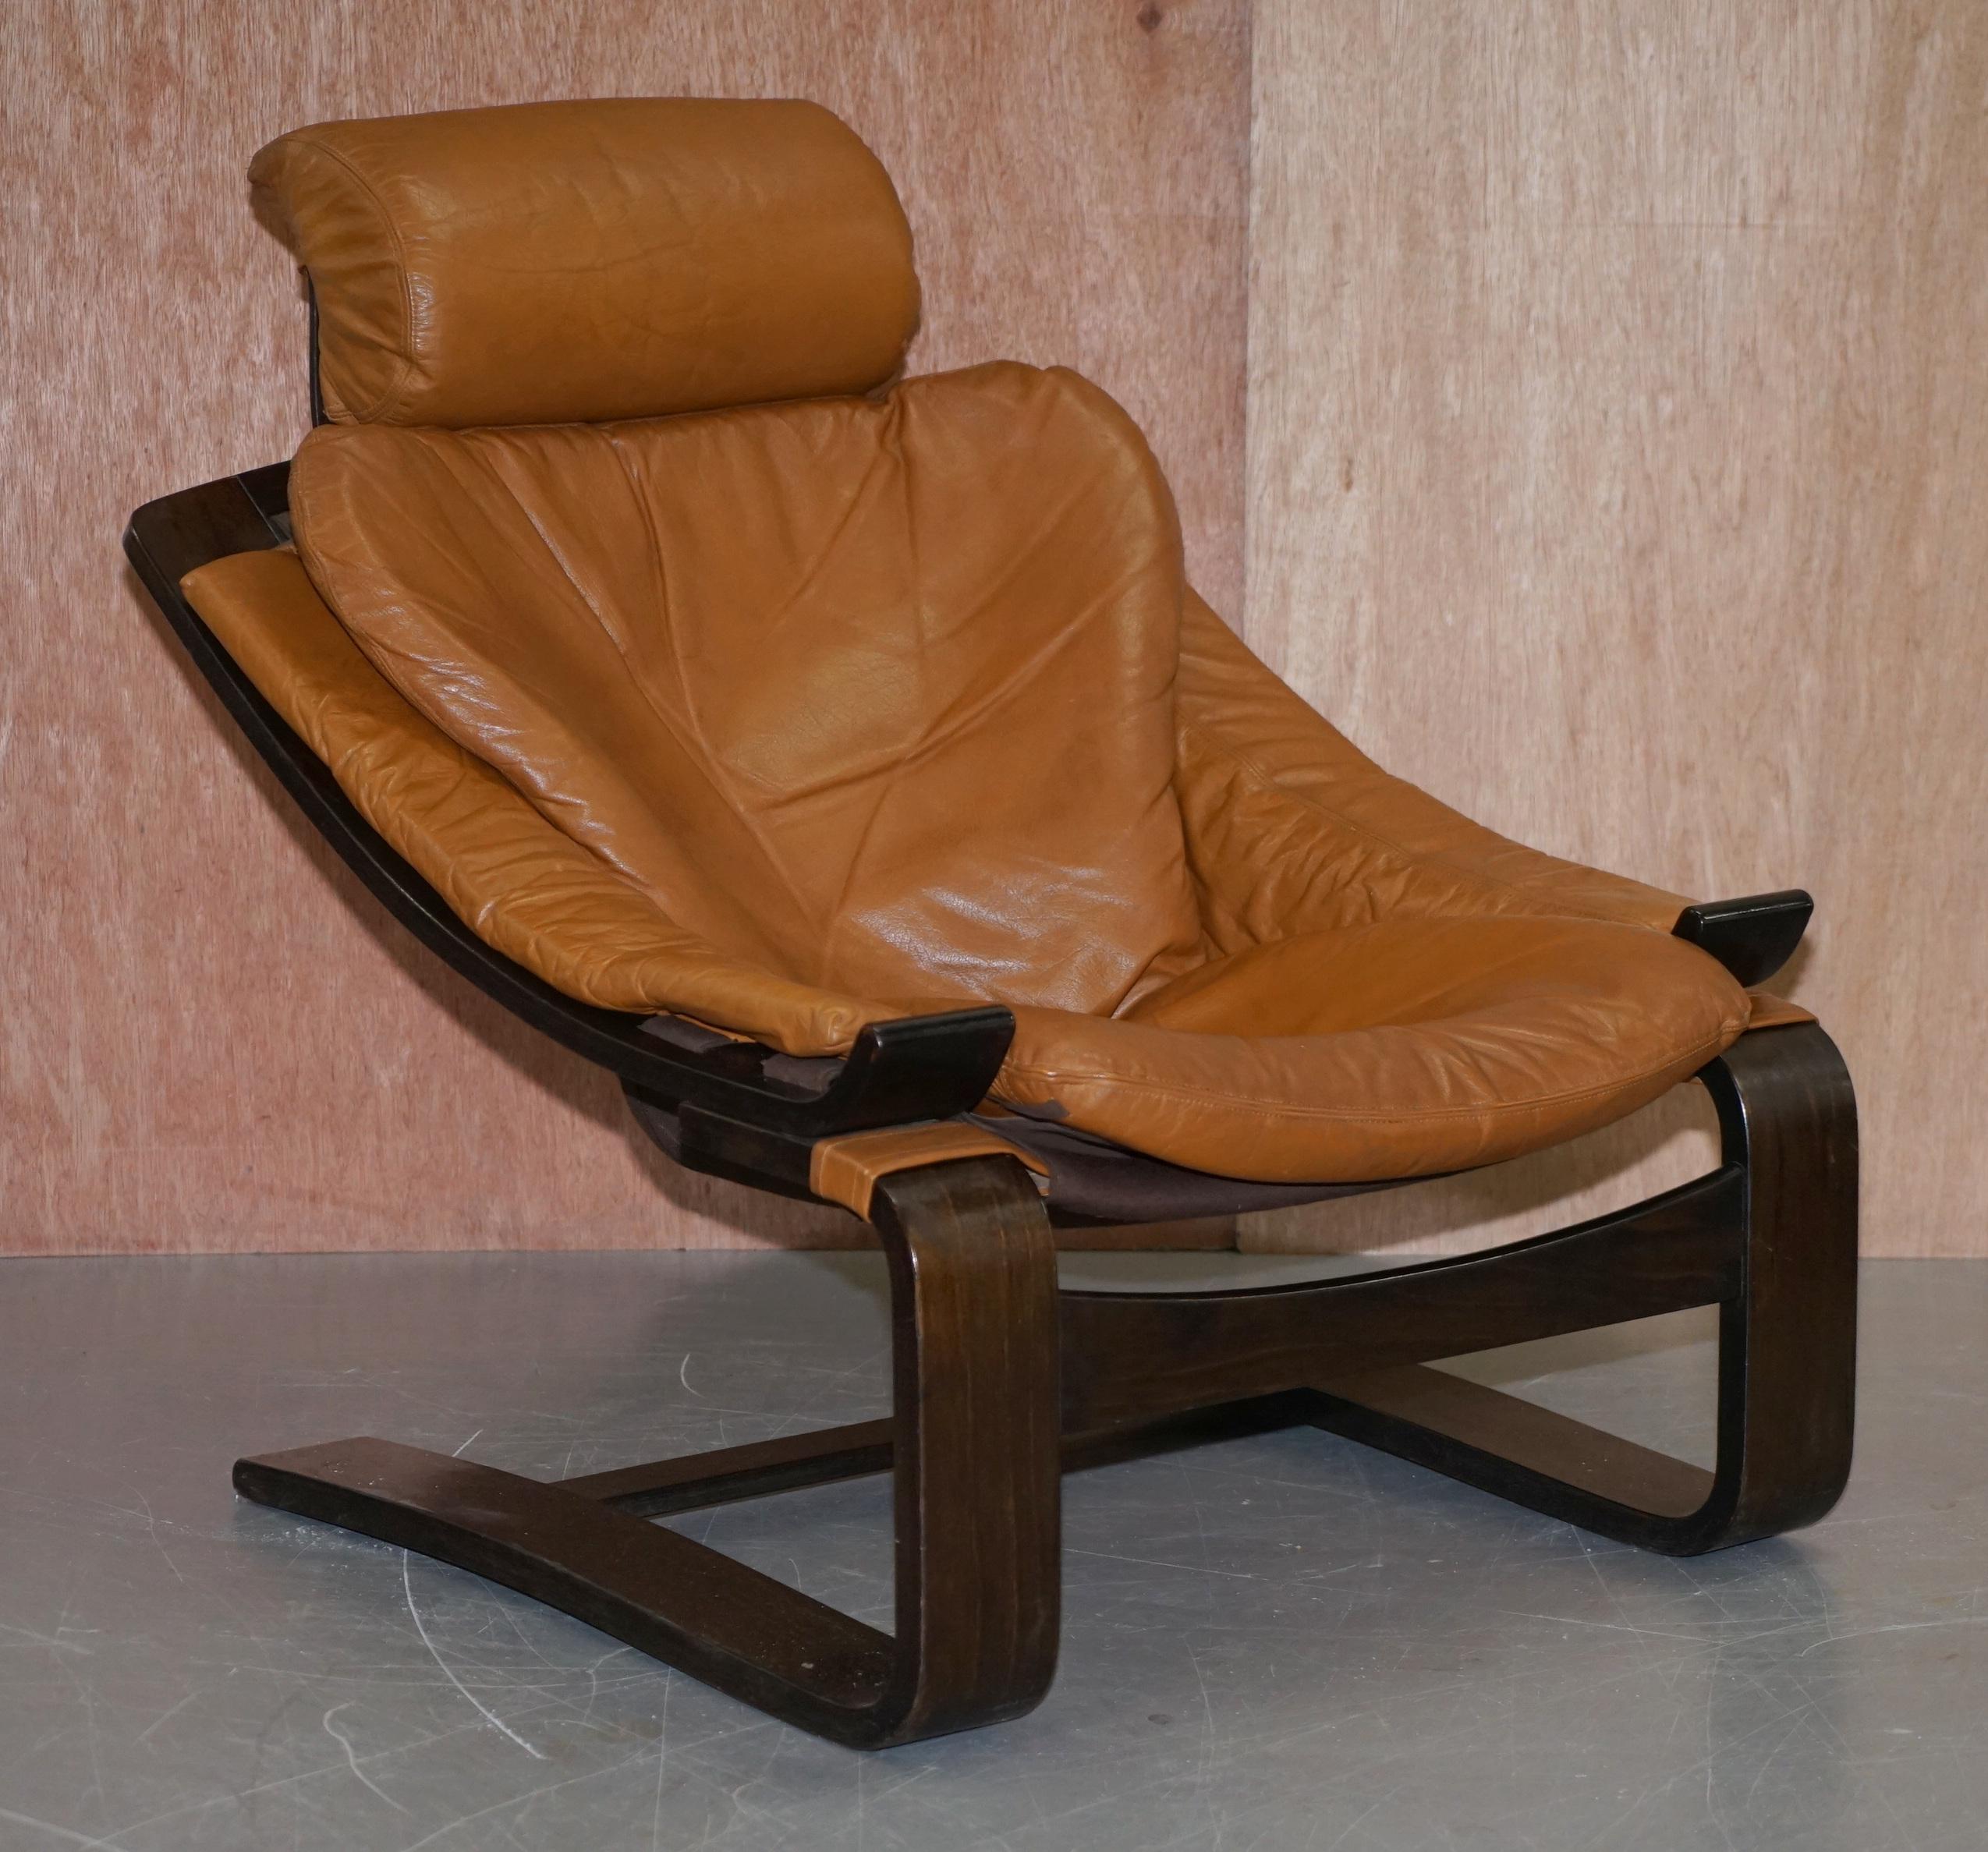 Nous sommes ravis d'offrir à la vente cette paire de fauteuils vintage Nelo Mobel Kroken en cuir brun cognac de style suédois du milieu du siècle dernier, créés par le génie d'Ake Fribytter.

Ces chaises sont à peu près aussi confortables que vous